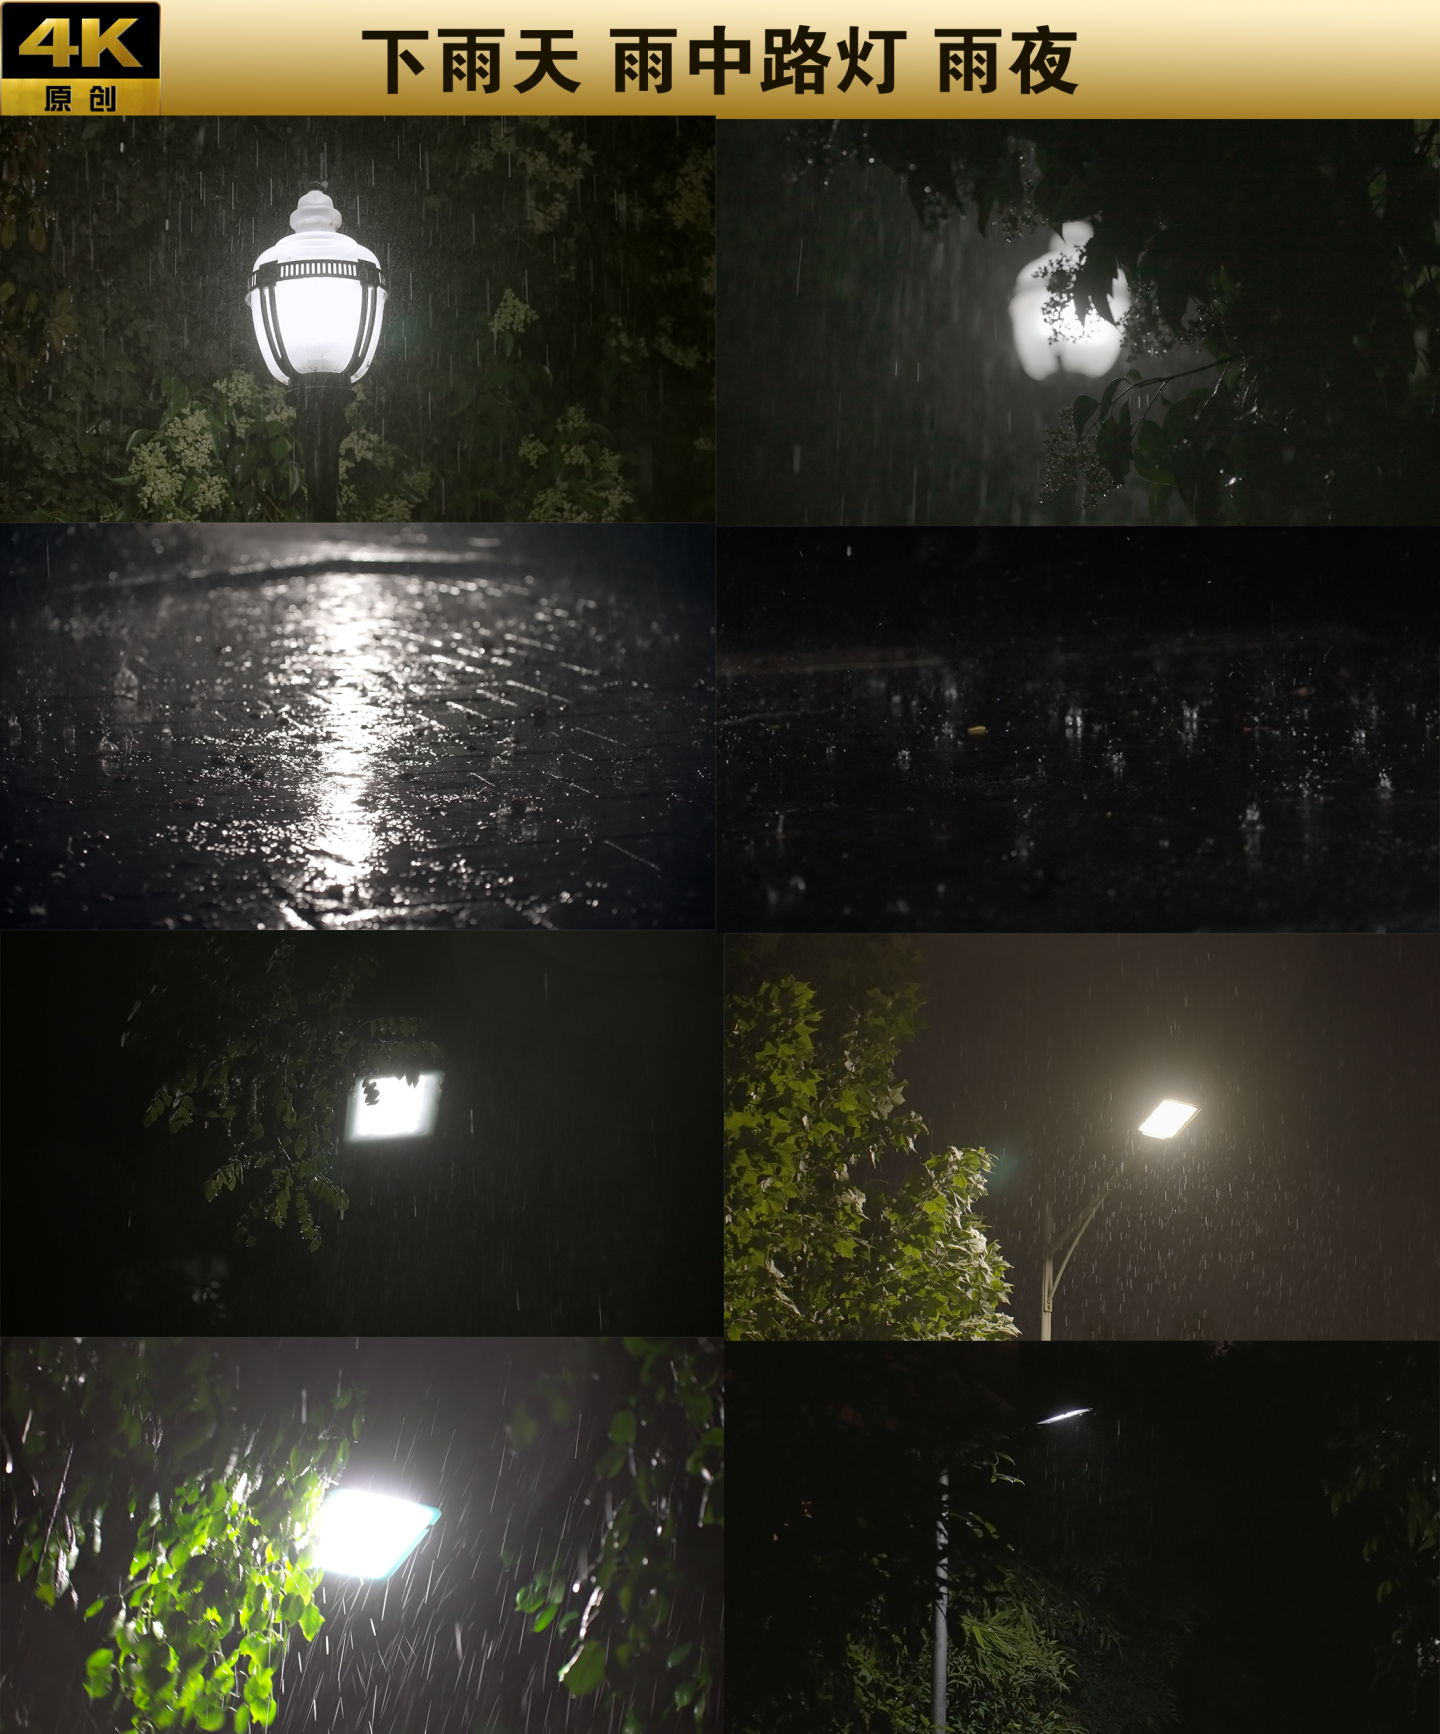 下雨天 雨中路灯 雨中夜景 雨打地面